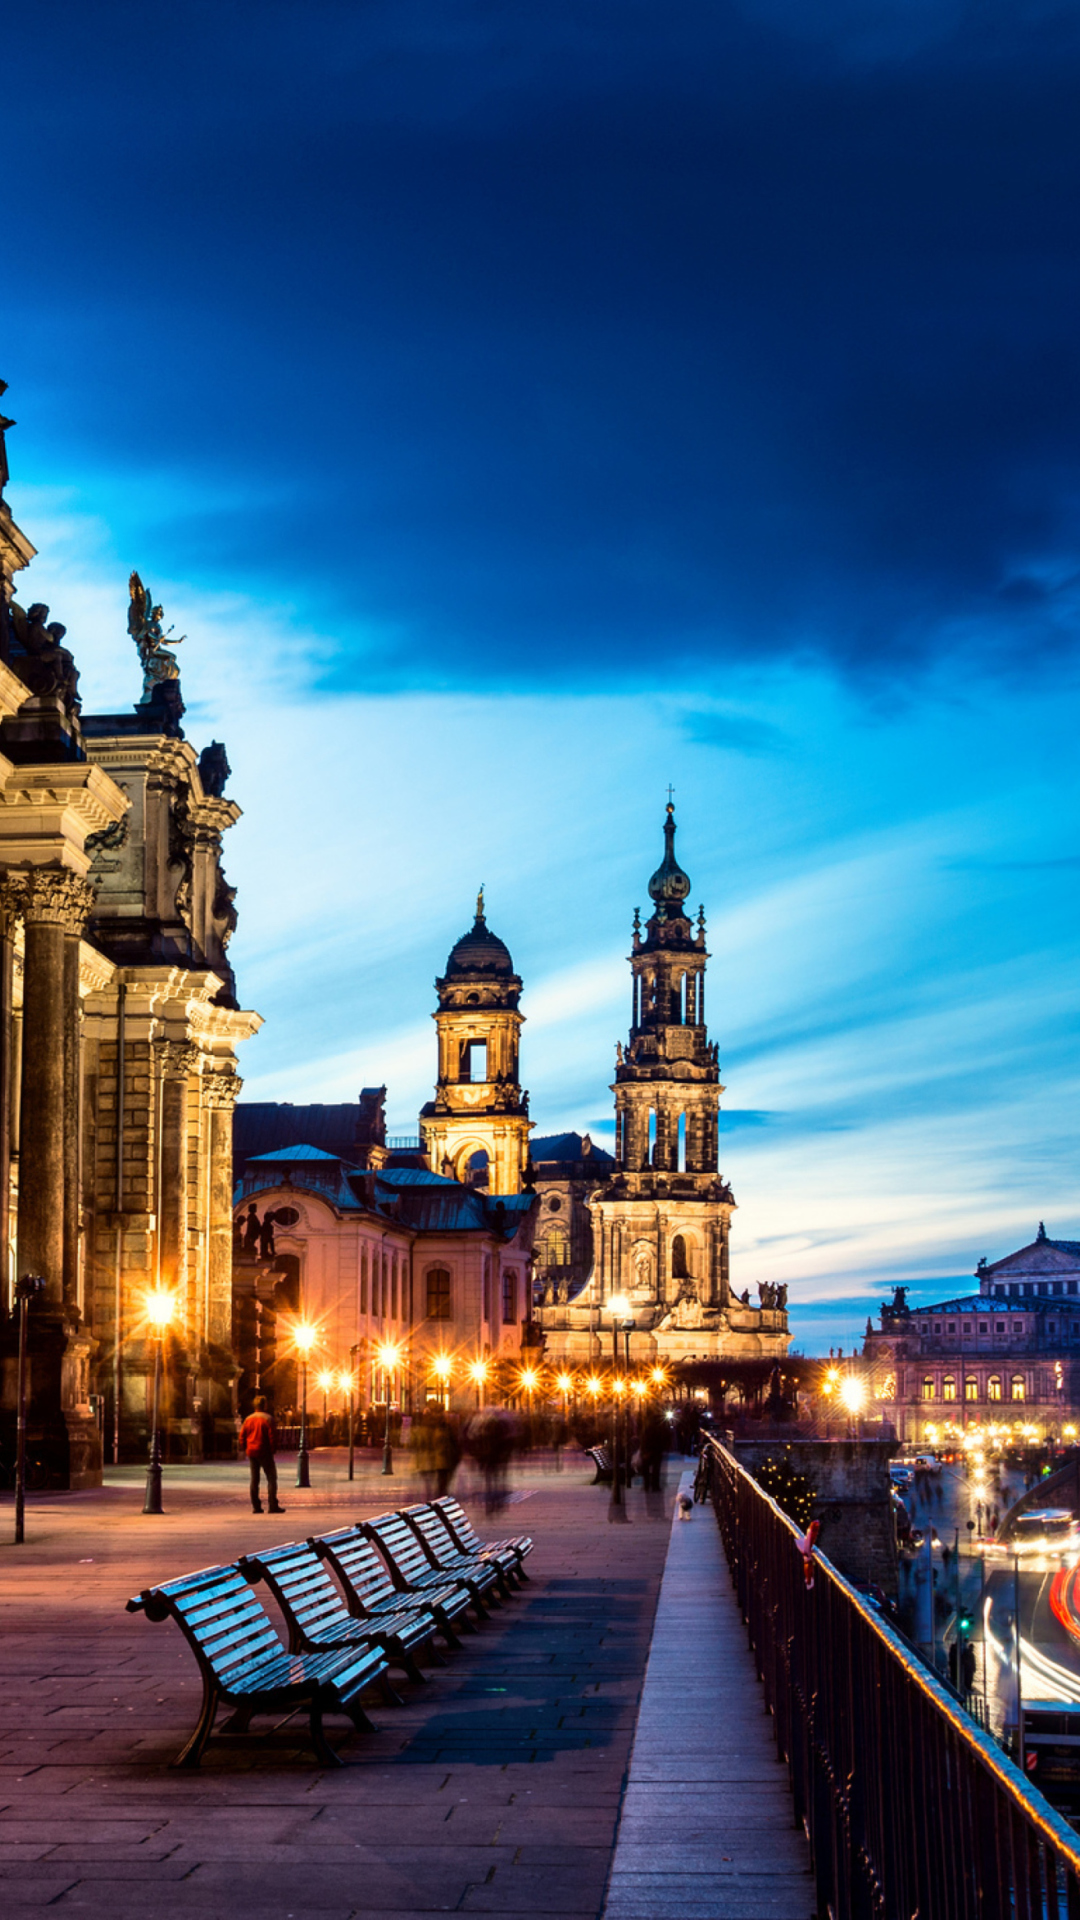 Altstadt, Dresden, Germany wallpaper 1080x1920